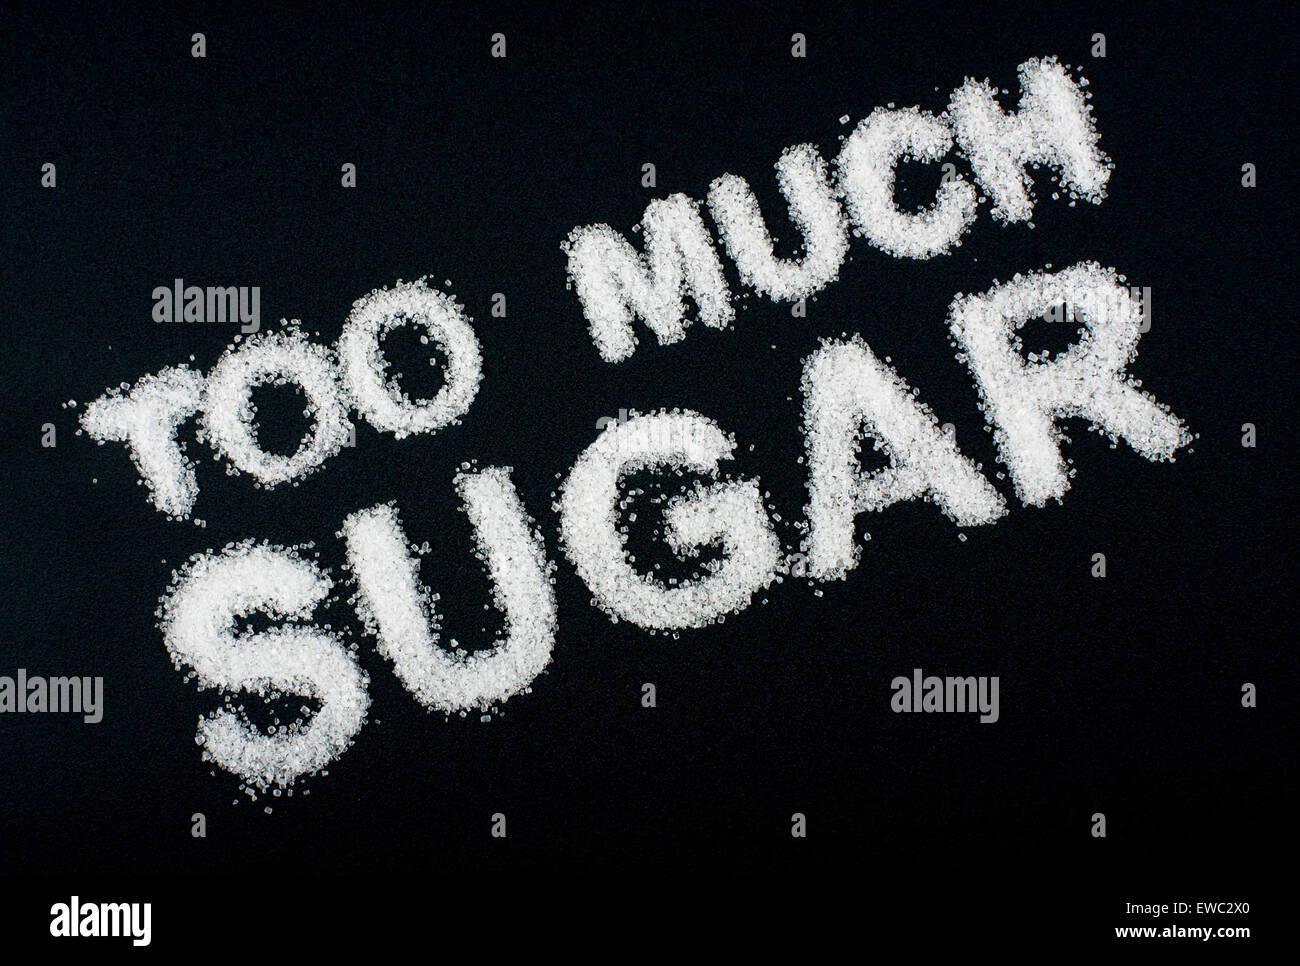 Cibo malsano concetto - zucchero Foto Stock